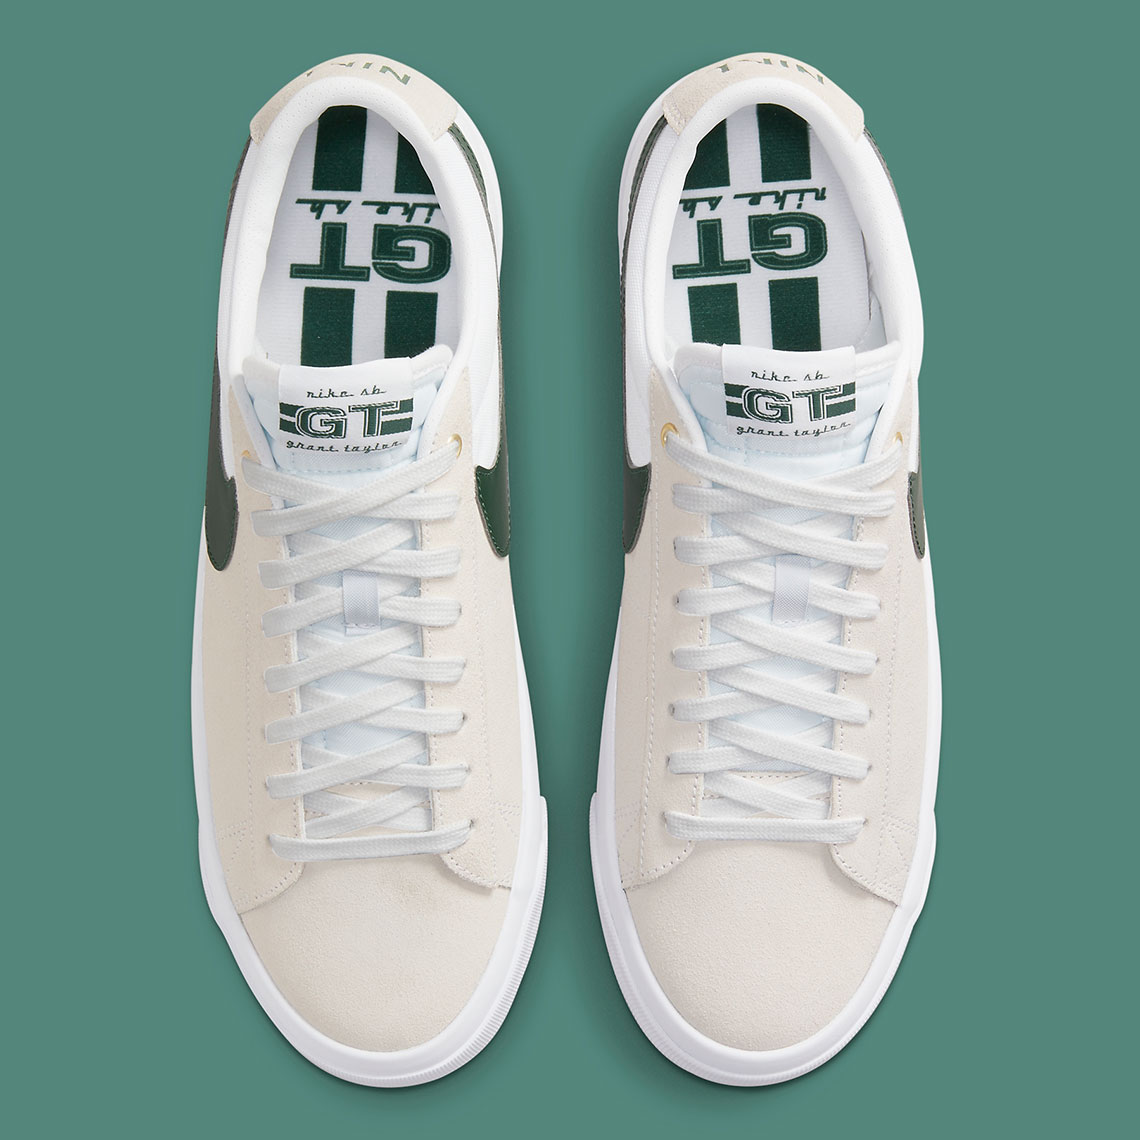 Nike Sb Blazer Low Gt White Green Dc7695 102 7